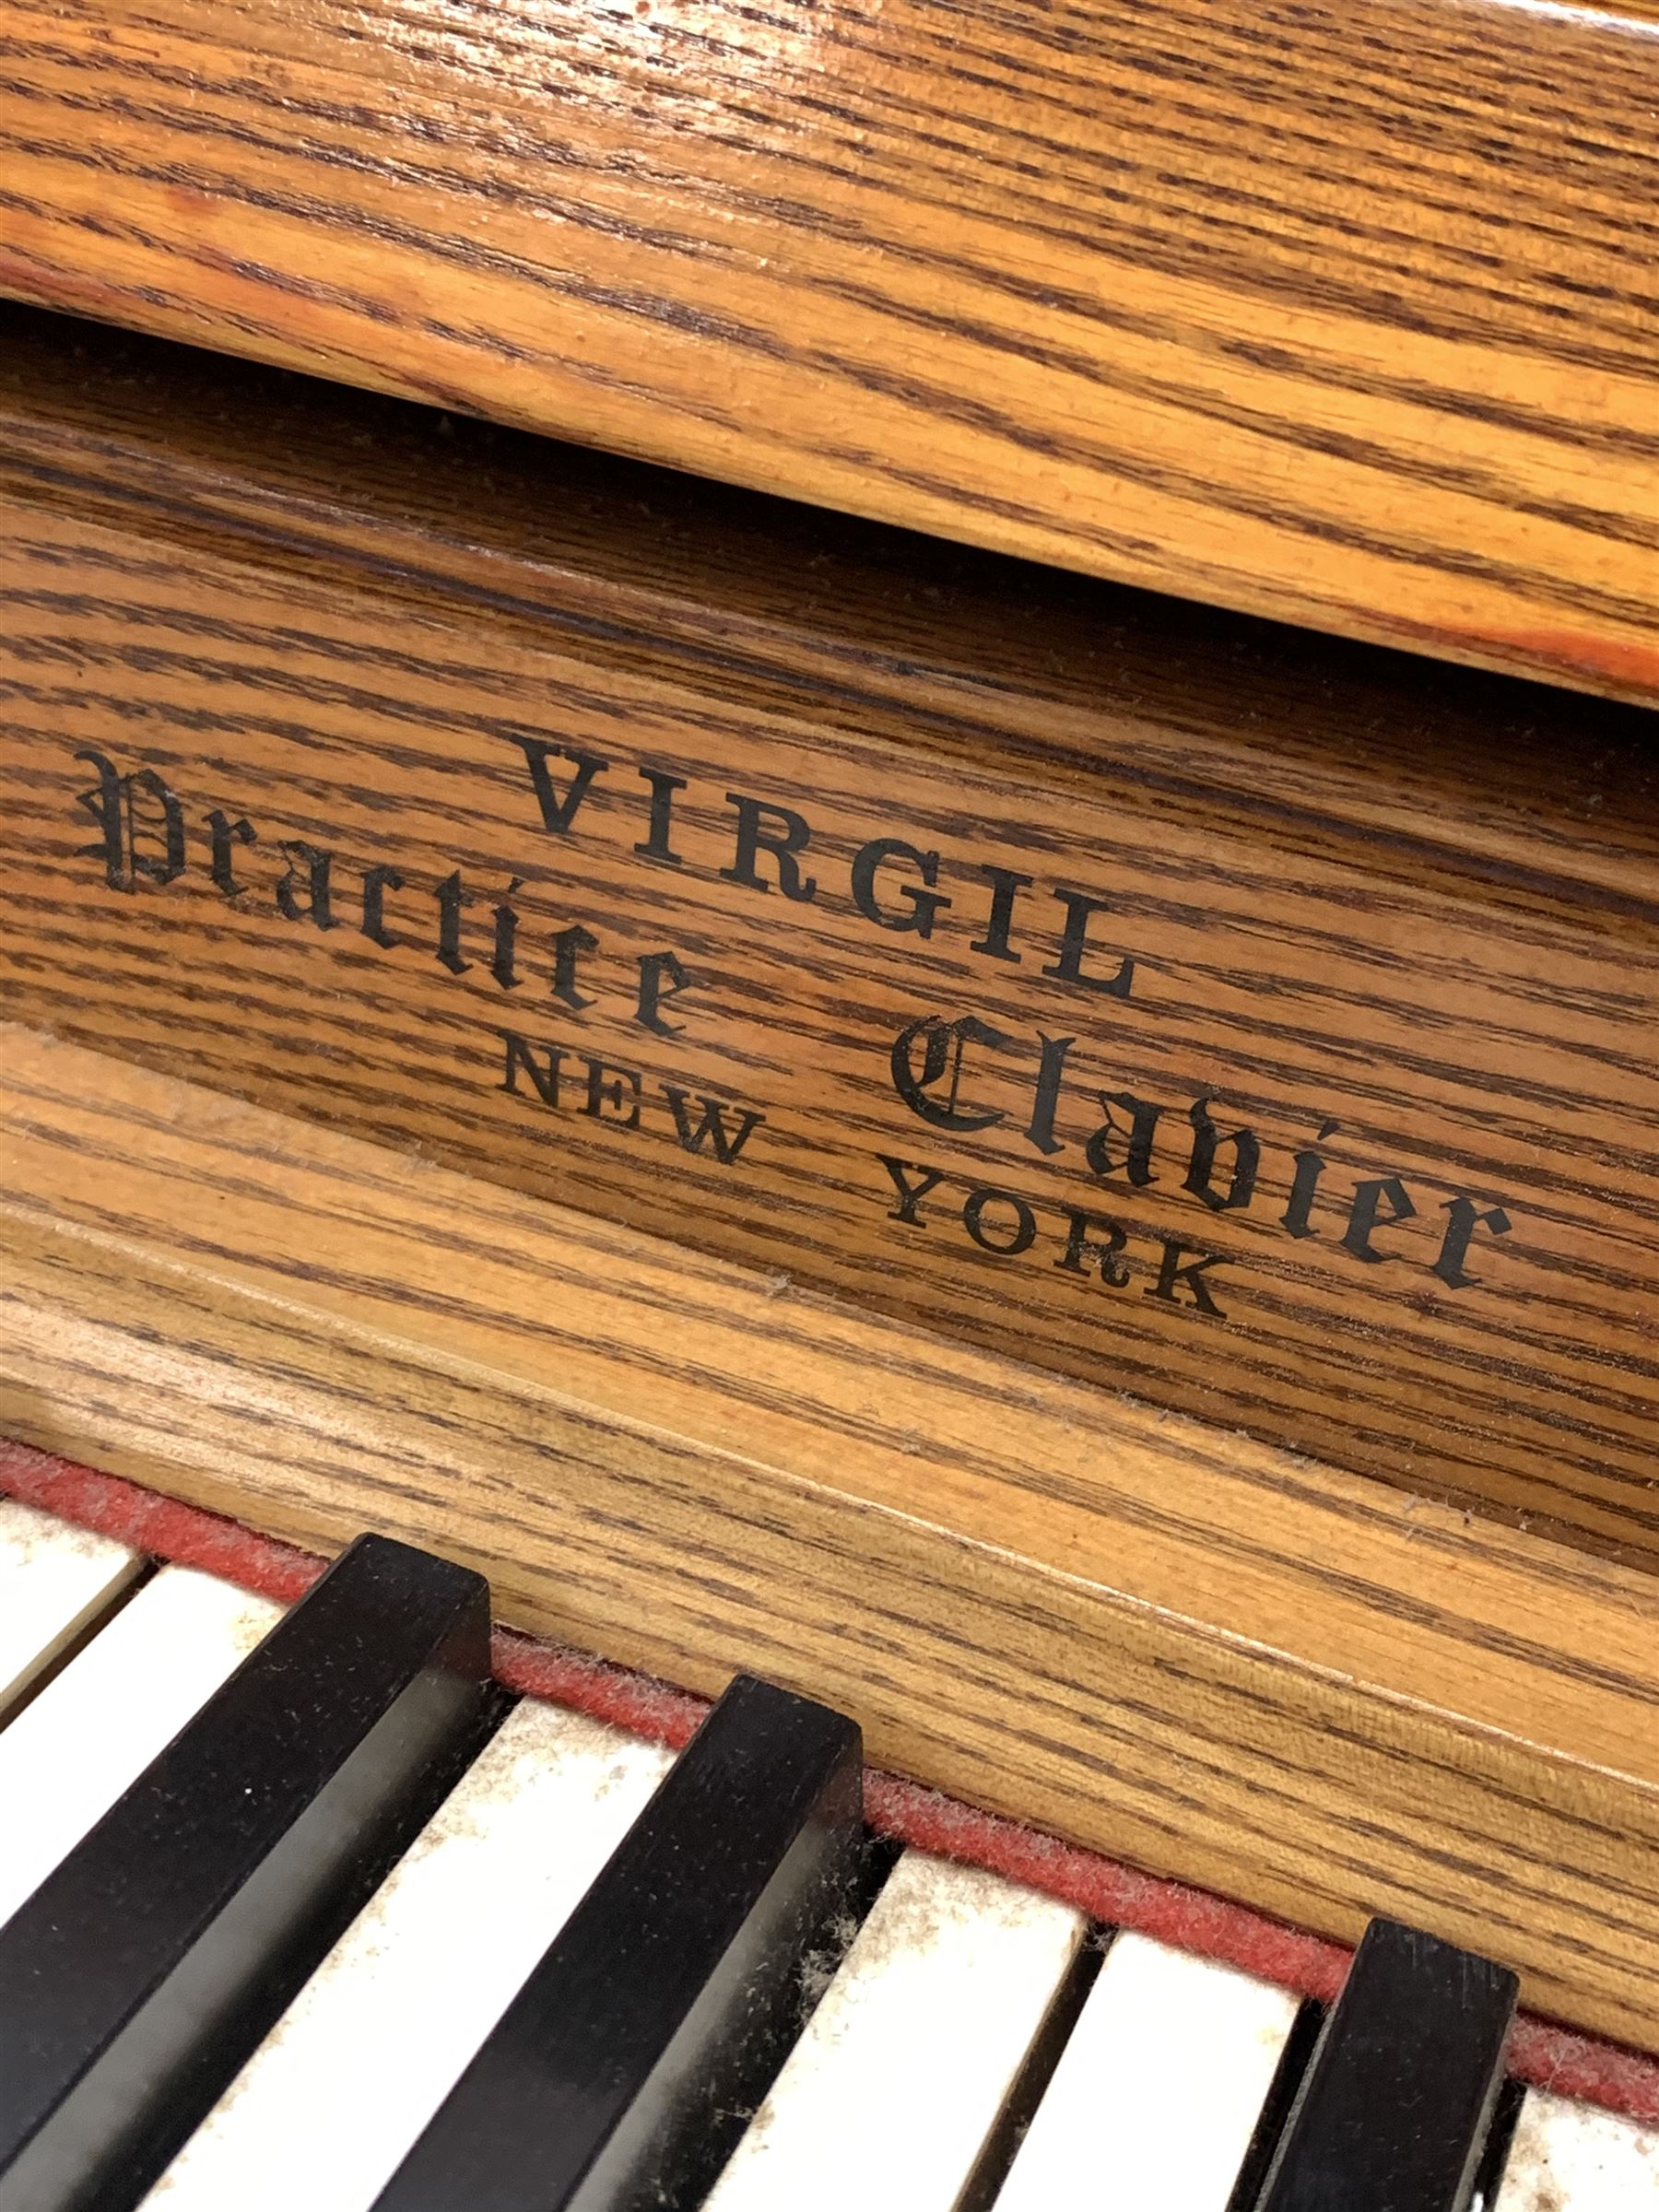 'Virgil Practice Clavier' - early 20th century dummy keyboard in oak case with folding trestle legs - Image 4 of 5